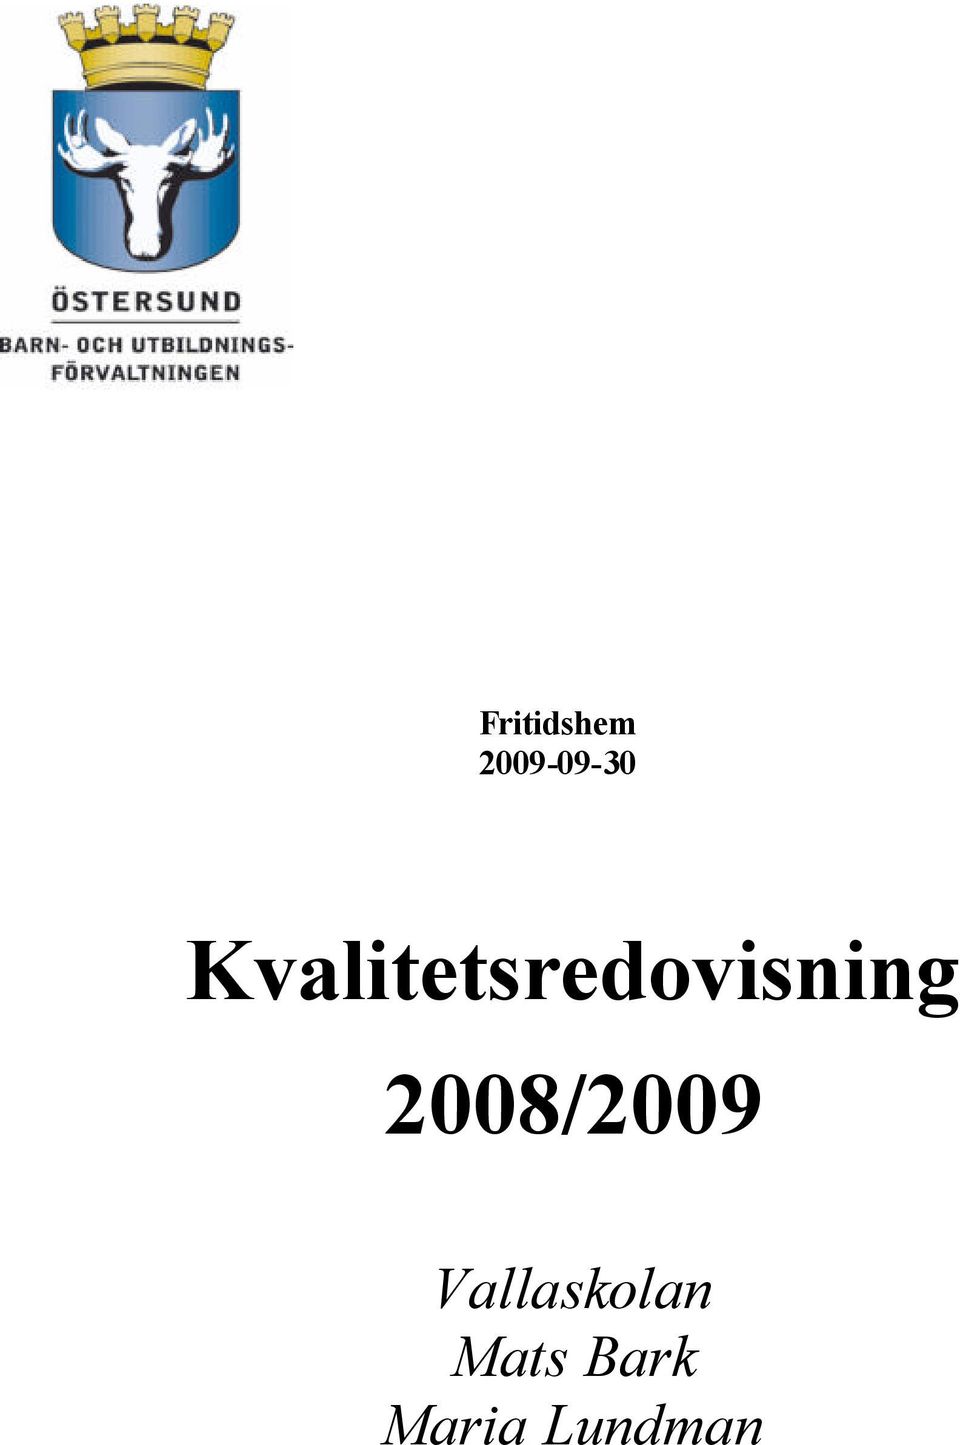 2008/2009 Vallaskolan